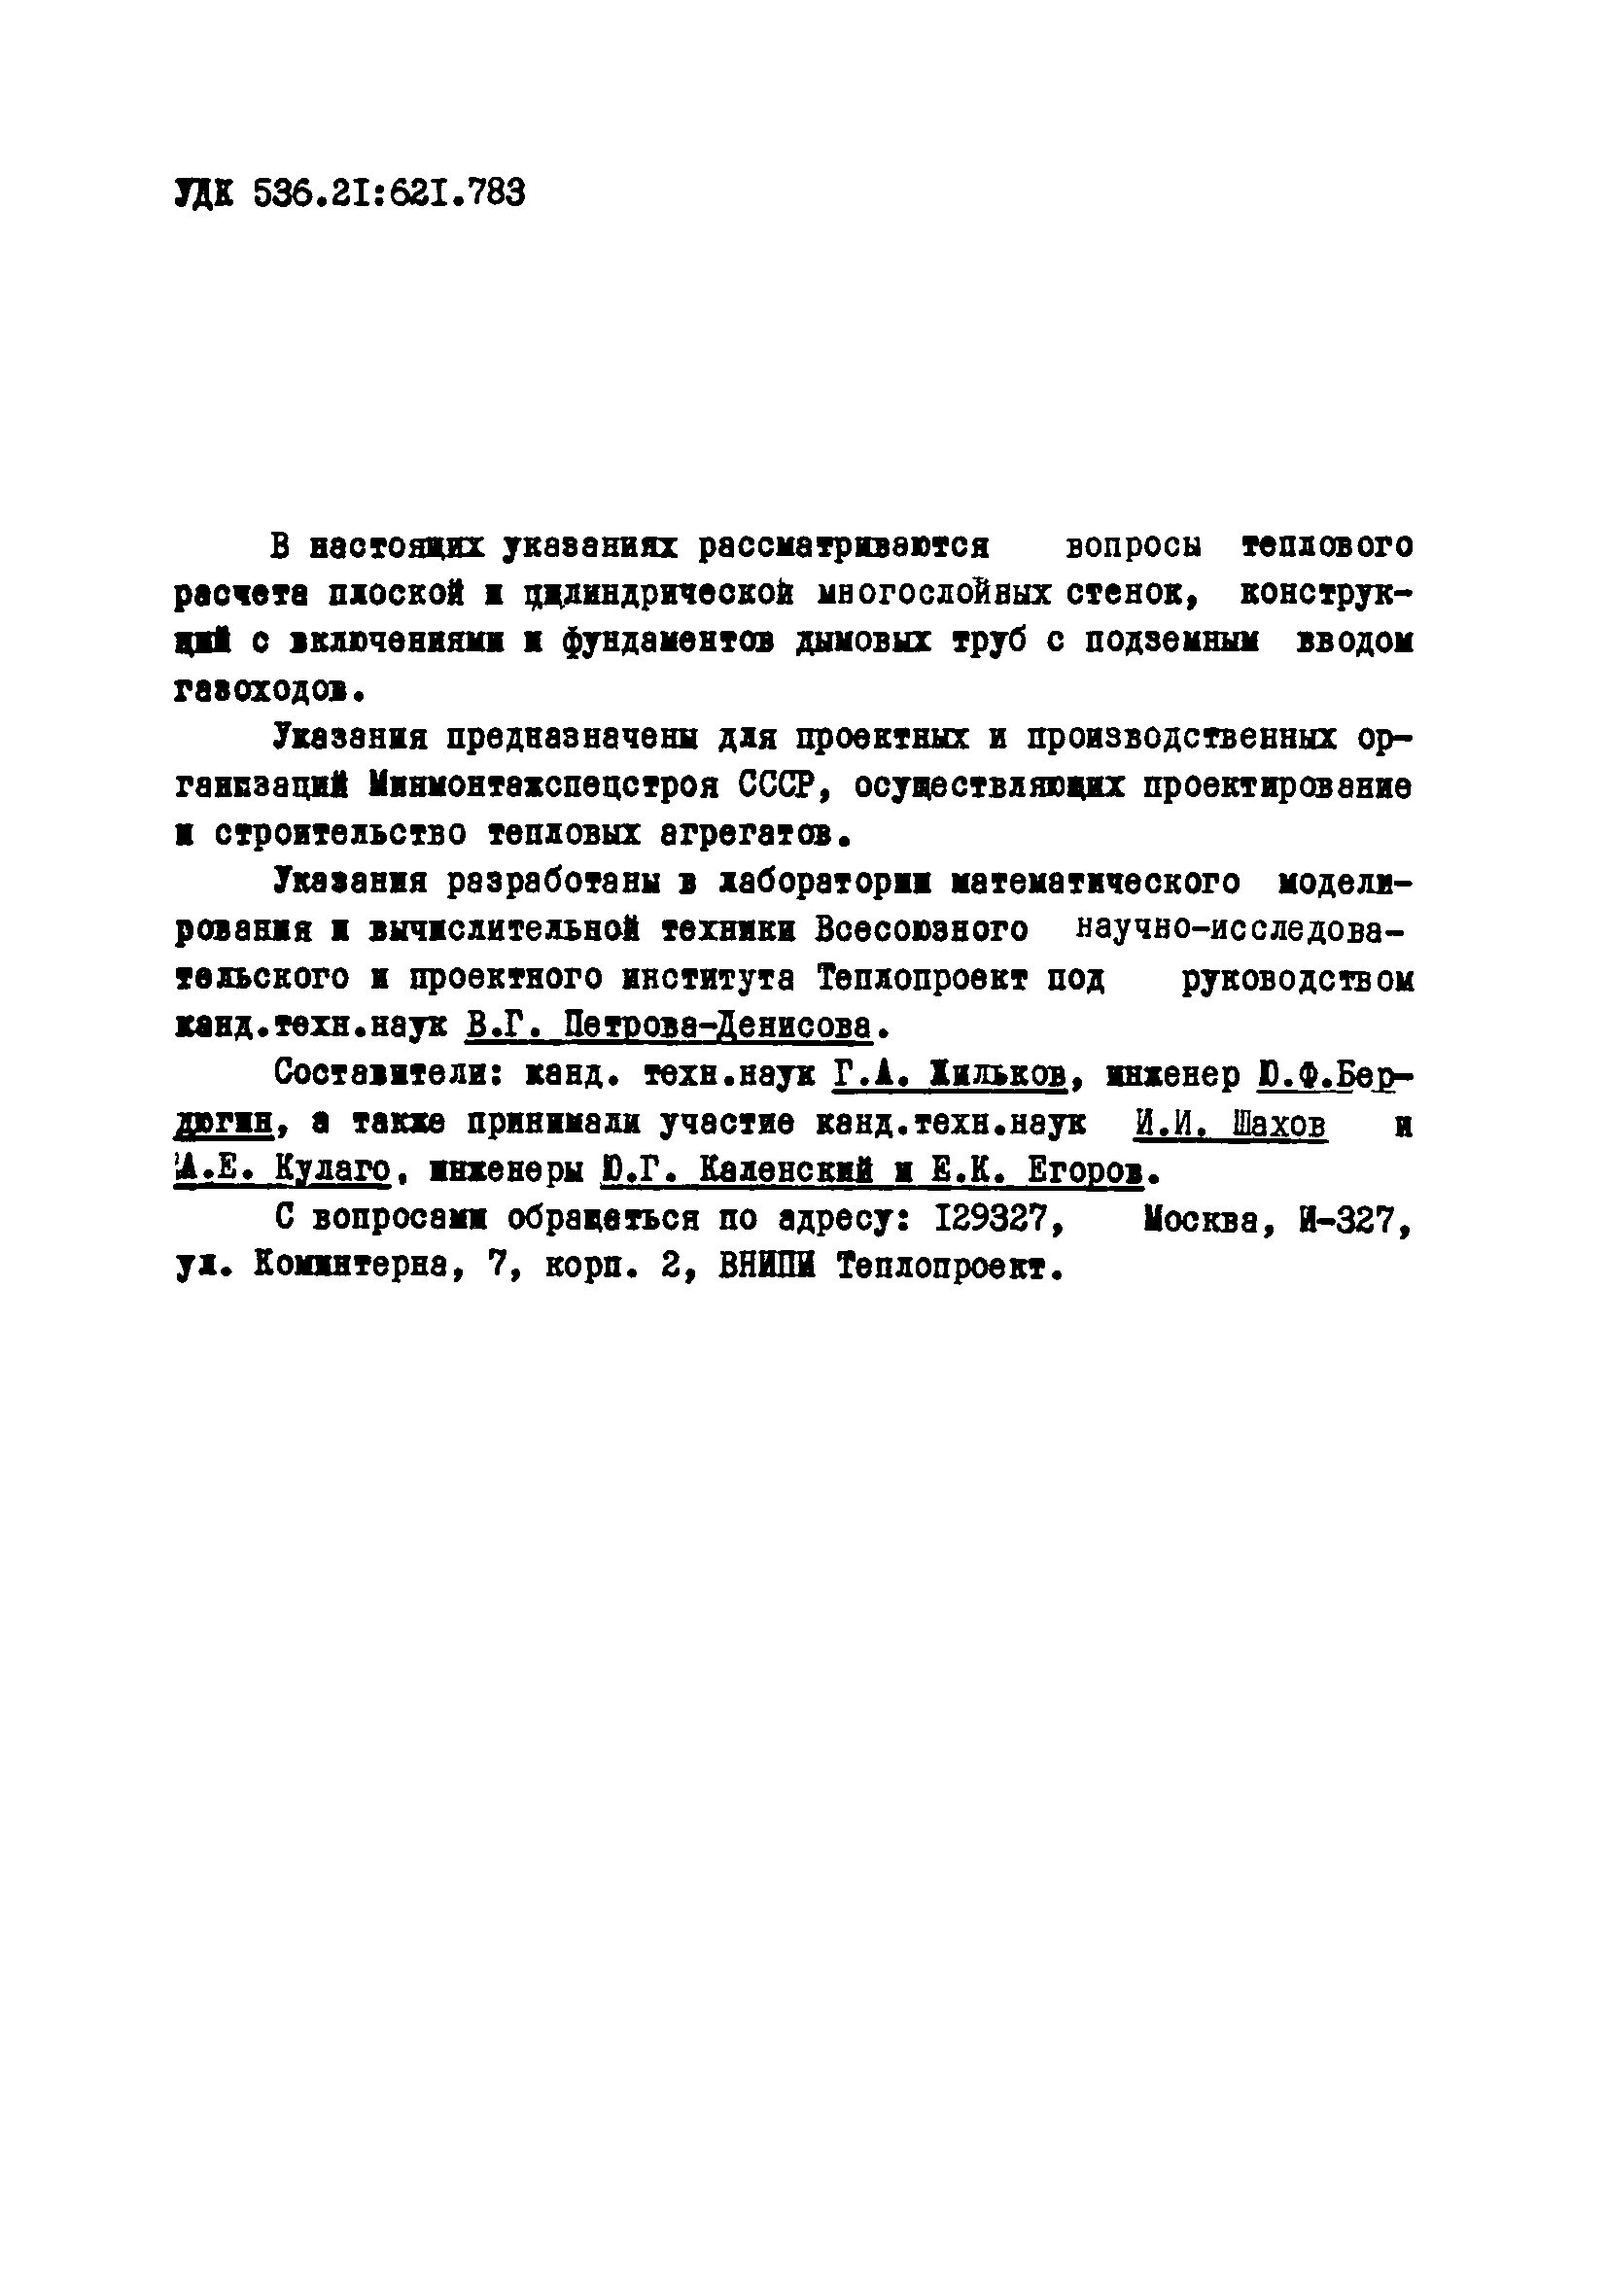 ВСН 314-73/ММСС СССР